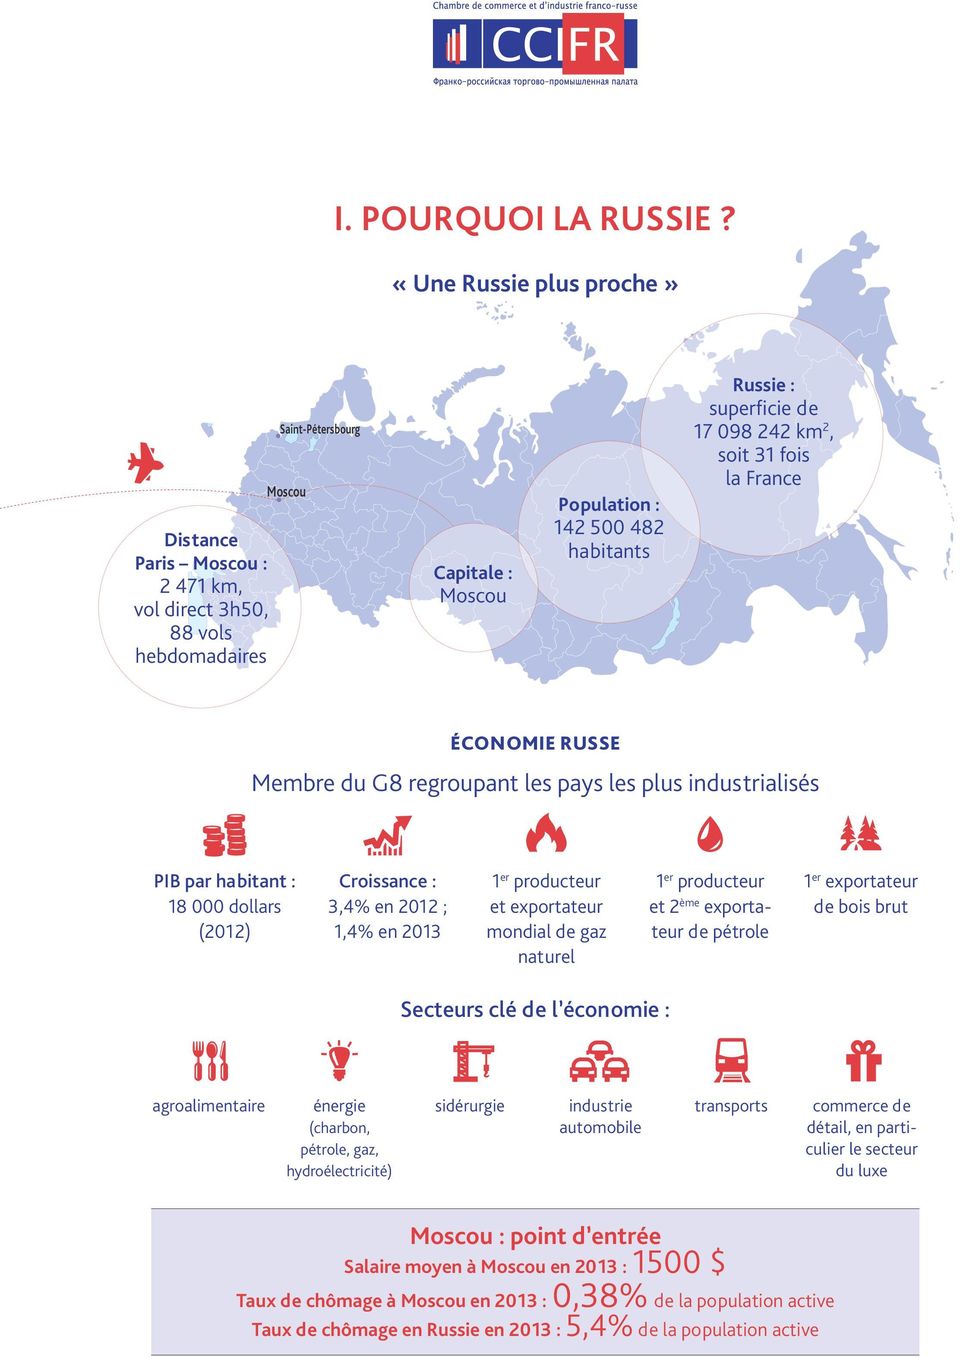 17 098 242 km 2, soit 31 fois la France ÉCONOMIE RUSSE Membre du G8 regroupant les pays les plus industrialisés PIB par habitant : 18 000 dollars (2012) Croissance : 3,4% en 2012 ; 1,4% en 2013 1 er